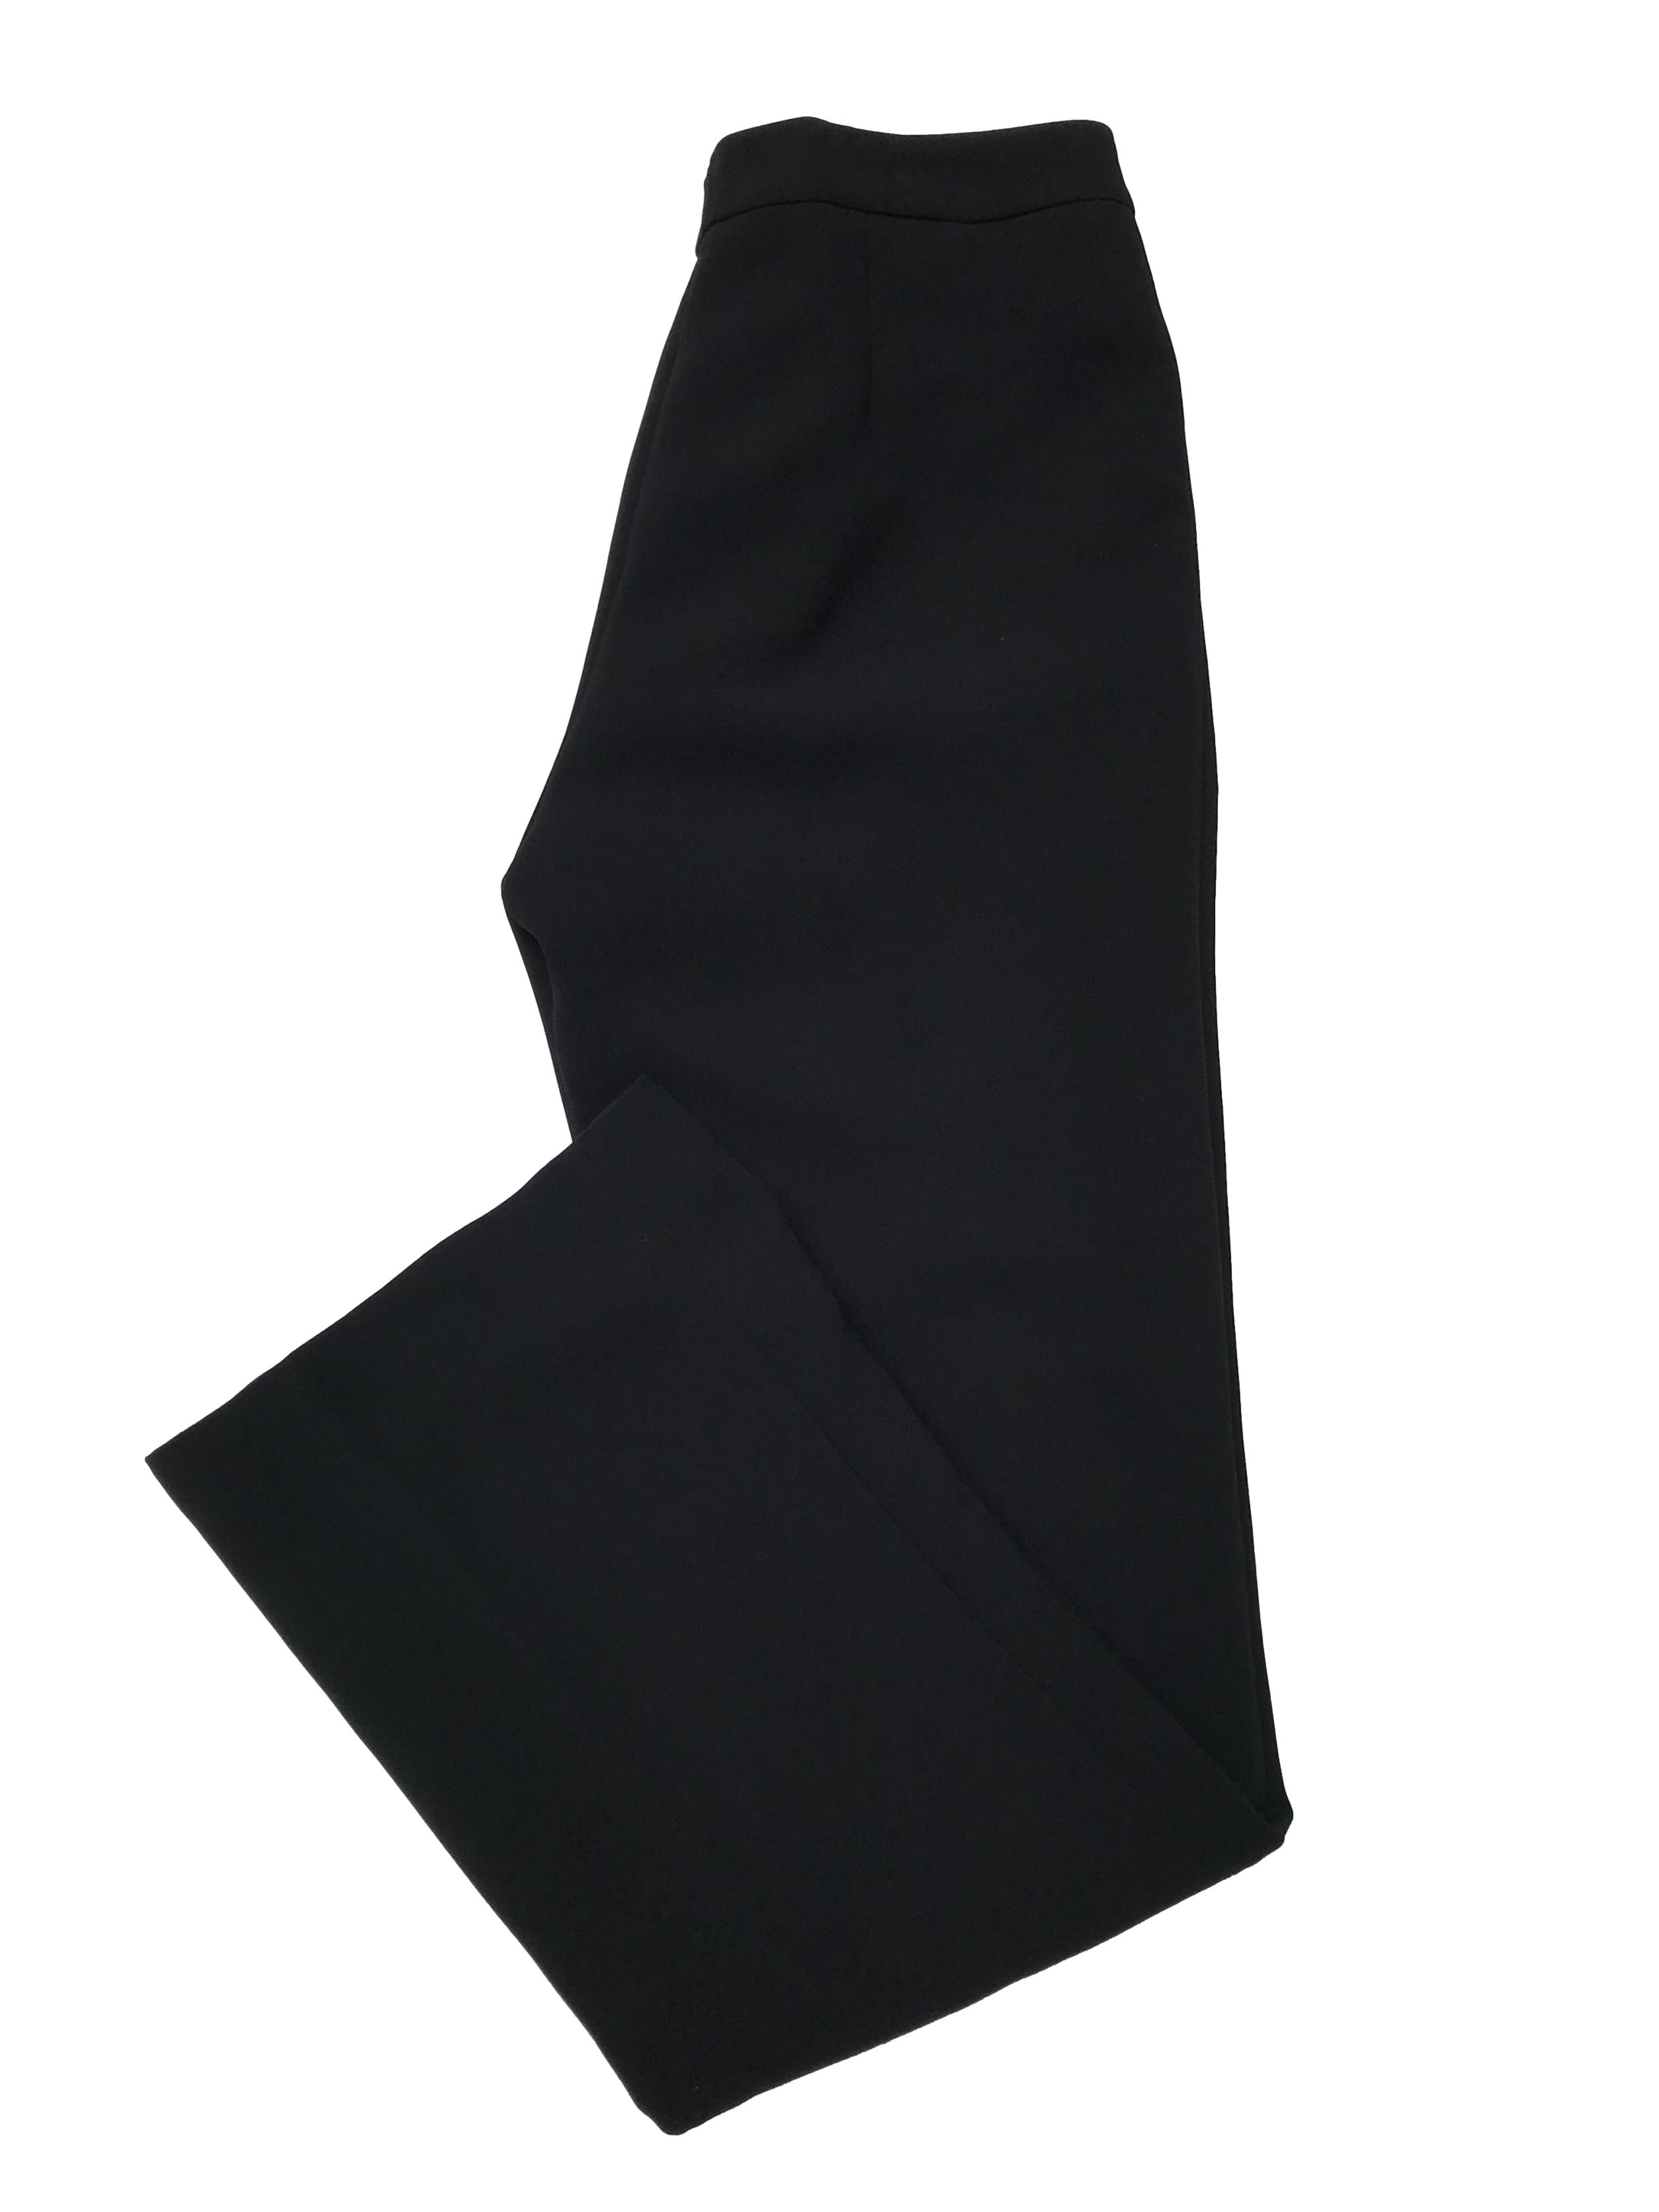 Pantalón Tahari negro de tiro medio, corte recto, forrado, con broche botón y cierre delanteros. Pretina 72cm Largo 102cm. Precio original S/ 350